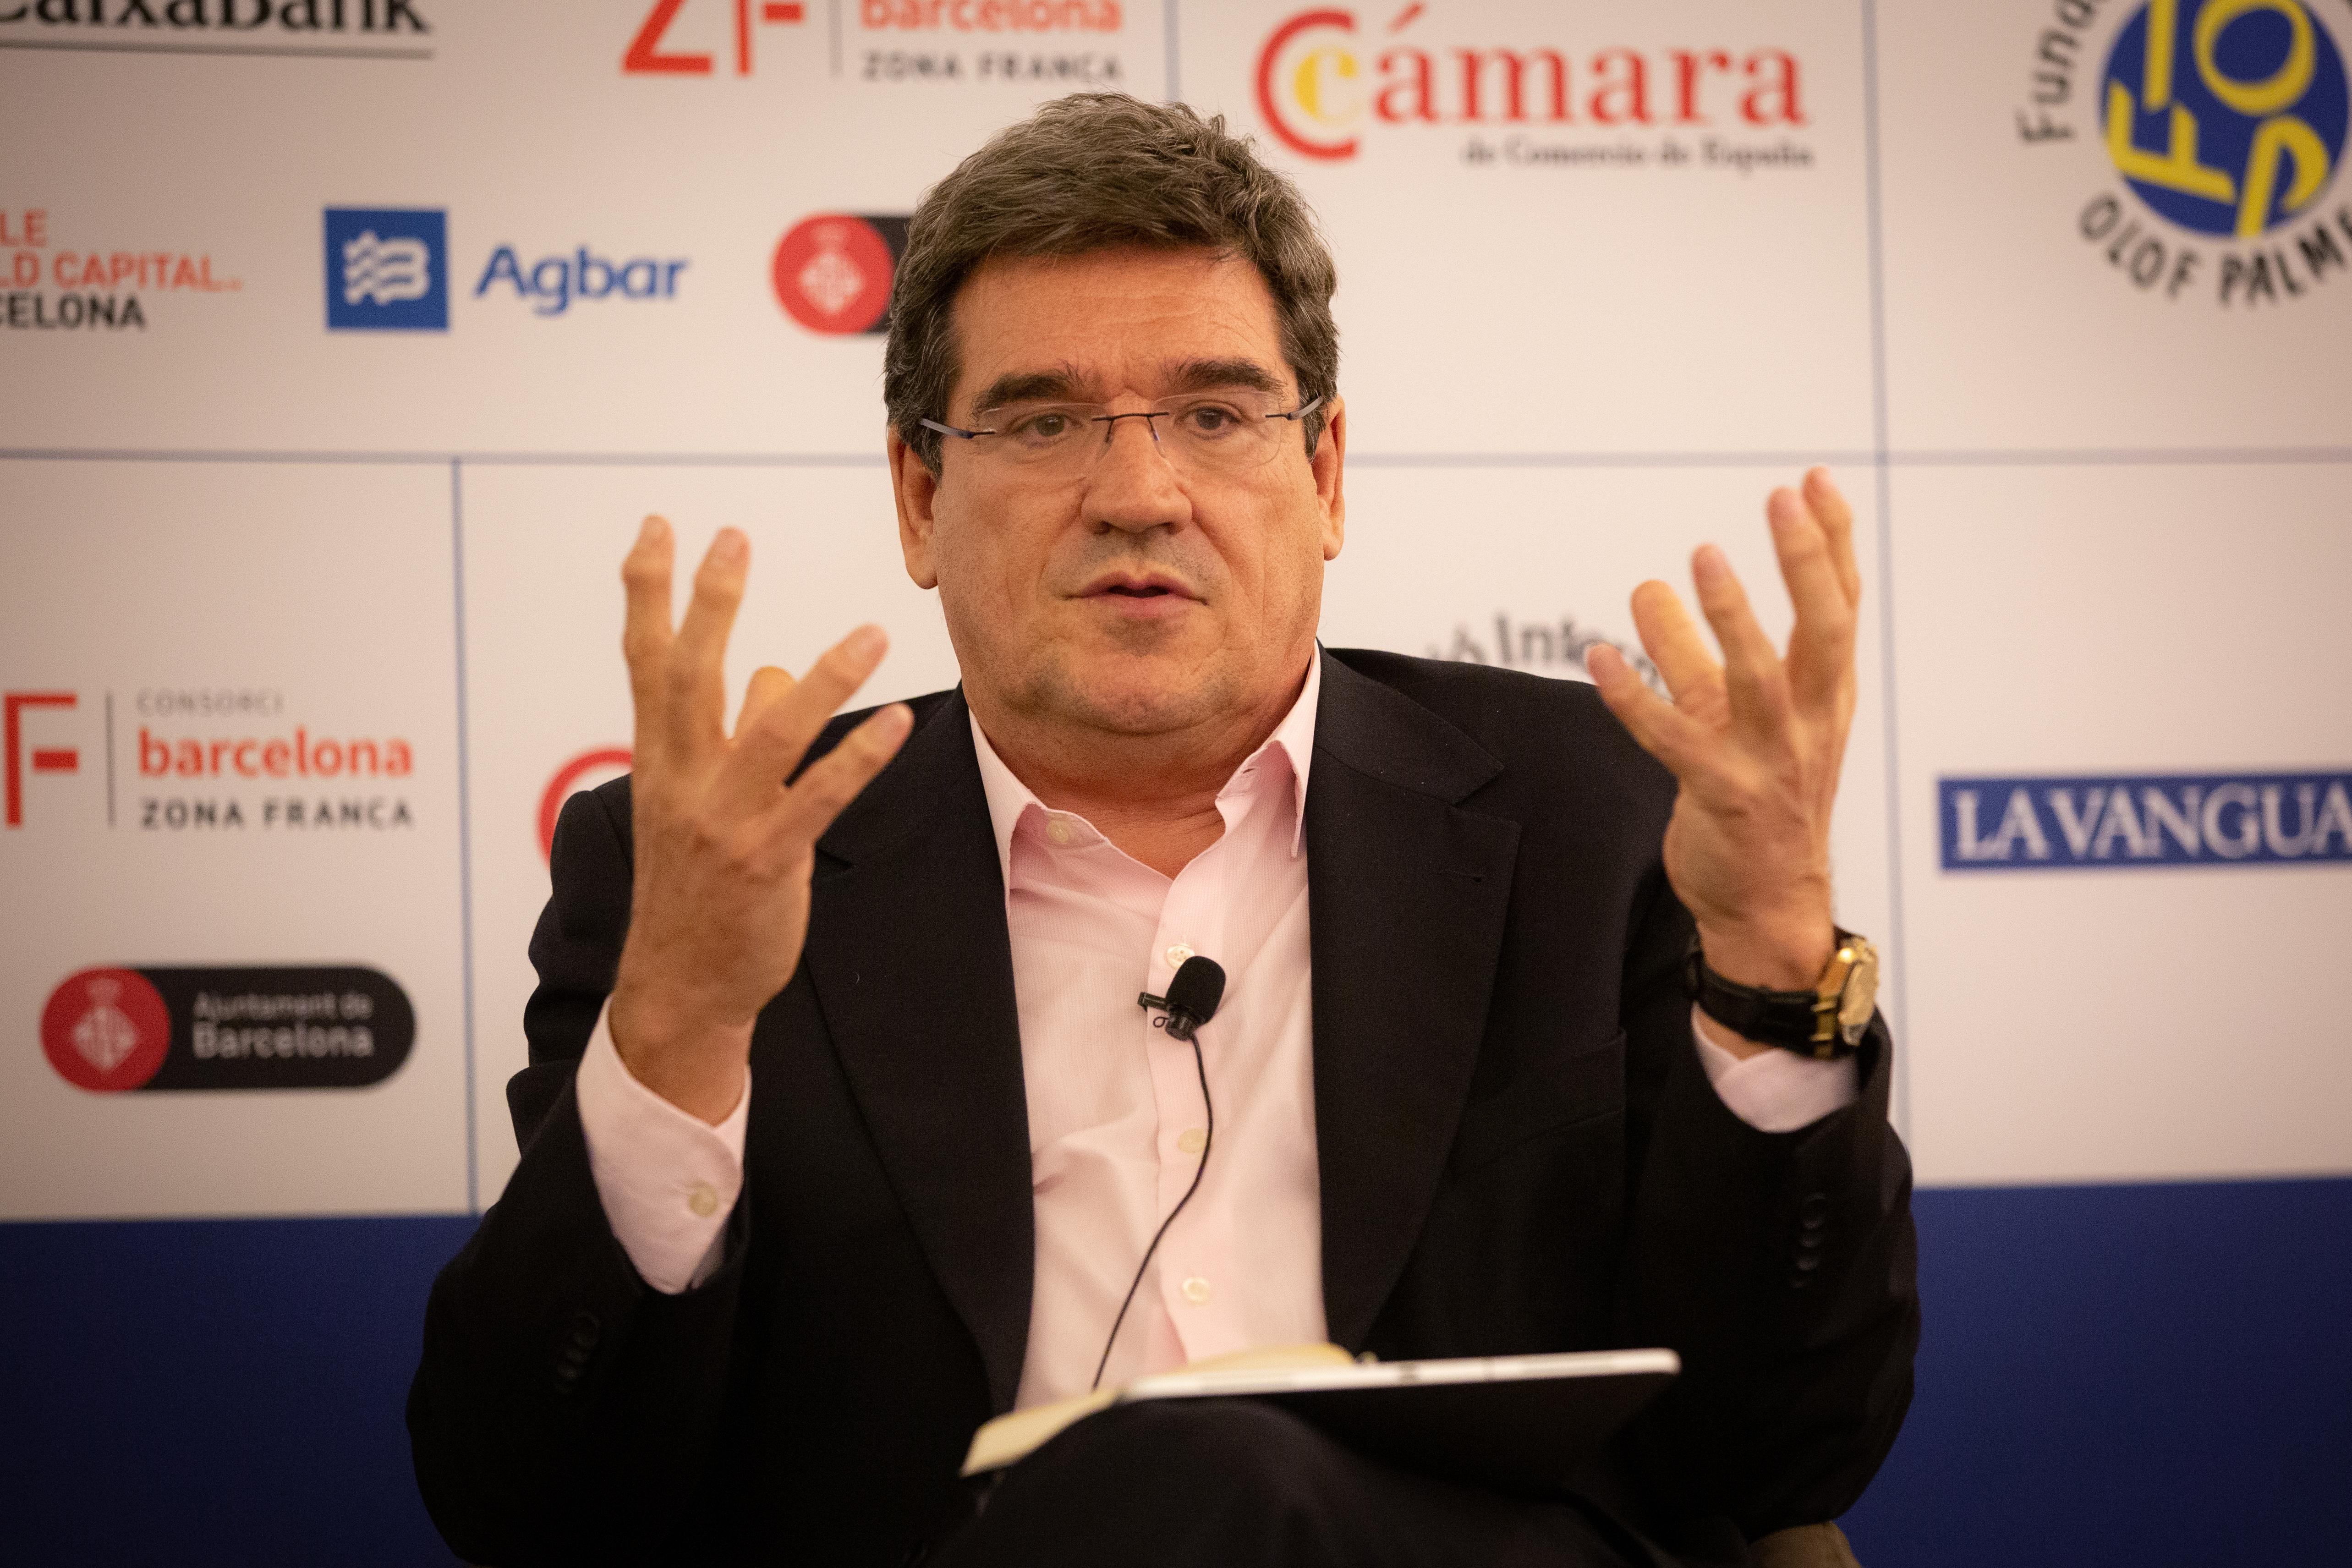 El presidente de la Autoridad Independiente de Responsabilidad Fiscal (AIReF) José Luis Escrivá interviene en el XXIV Encuentro de Economía de S'Agaró (Girona) a 29 de noviembre de 2019 